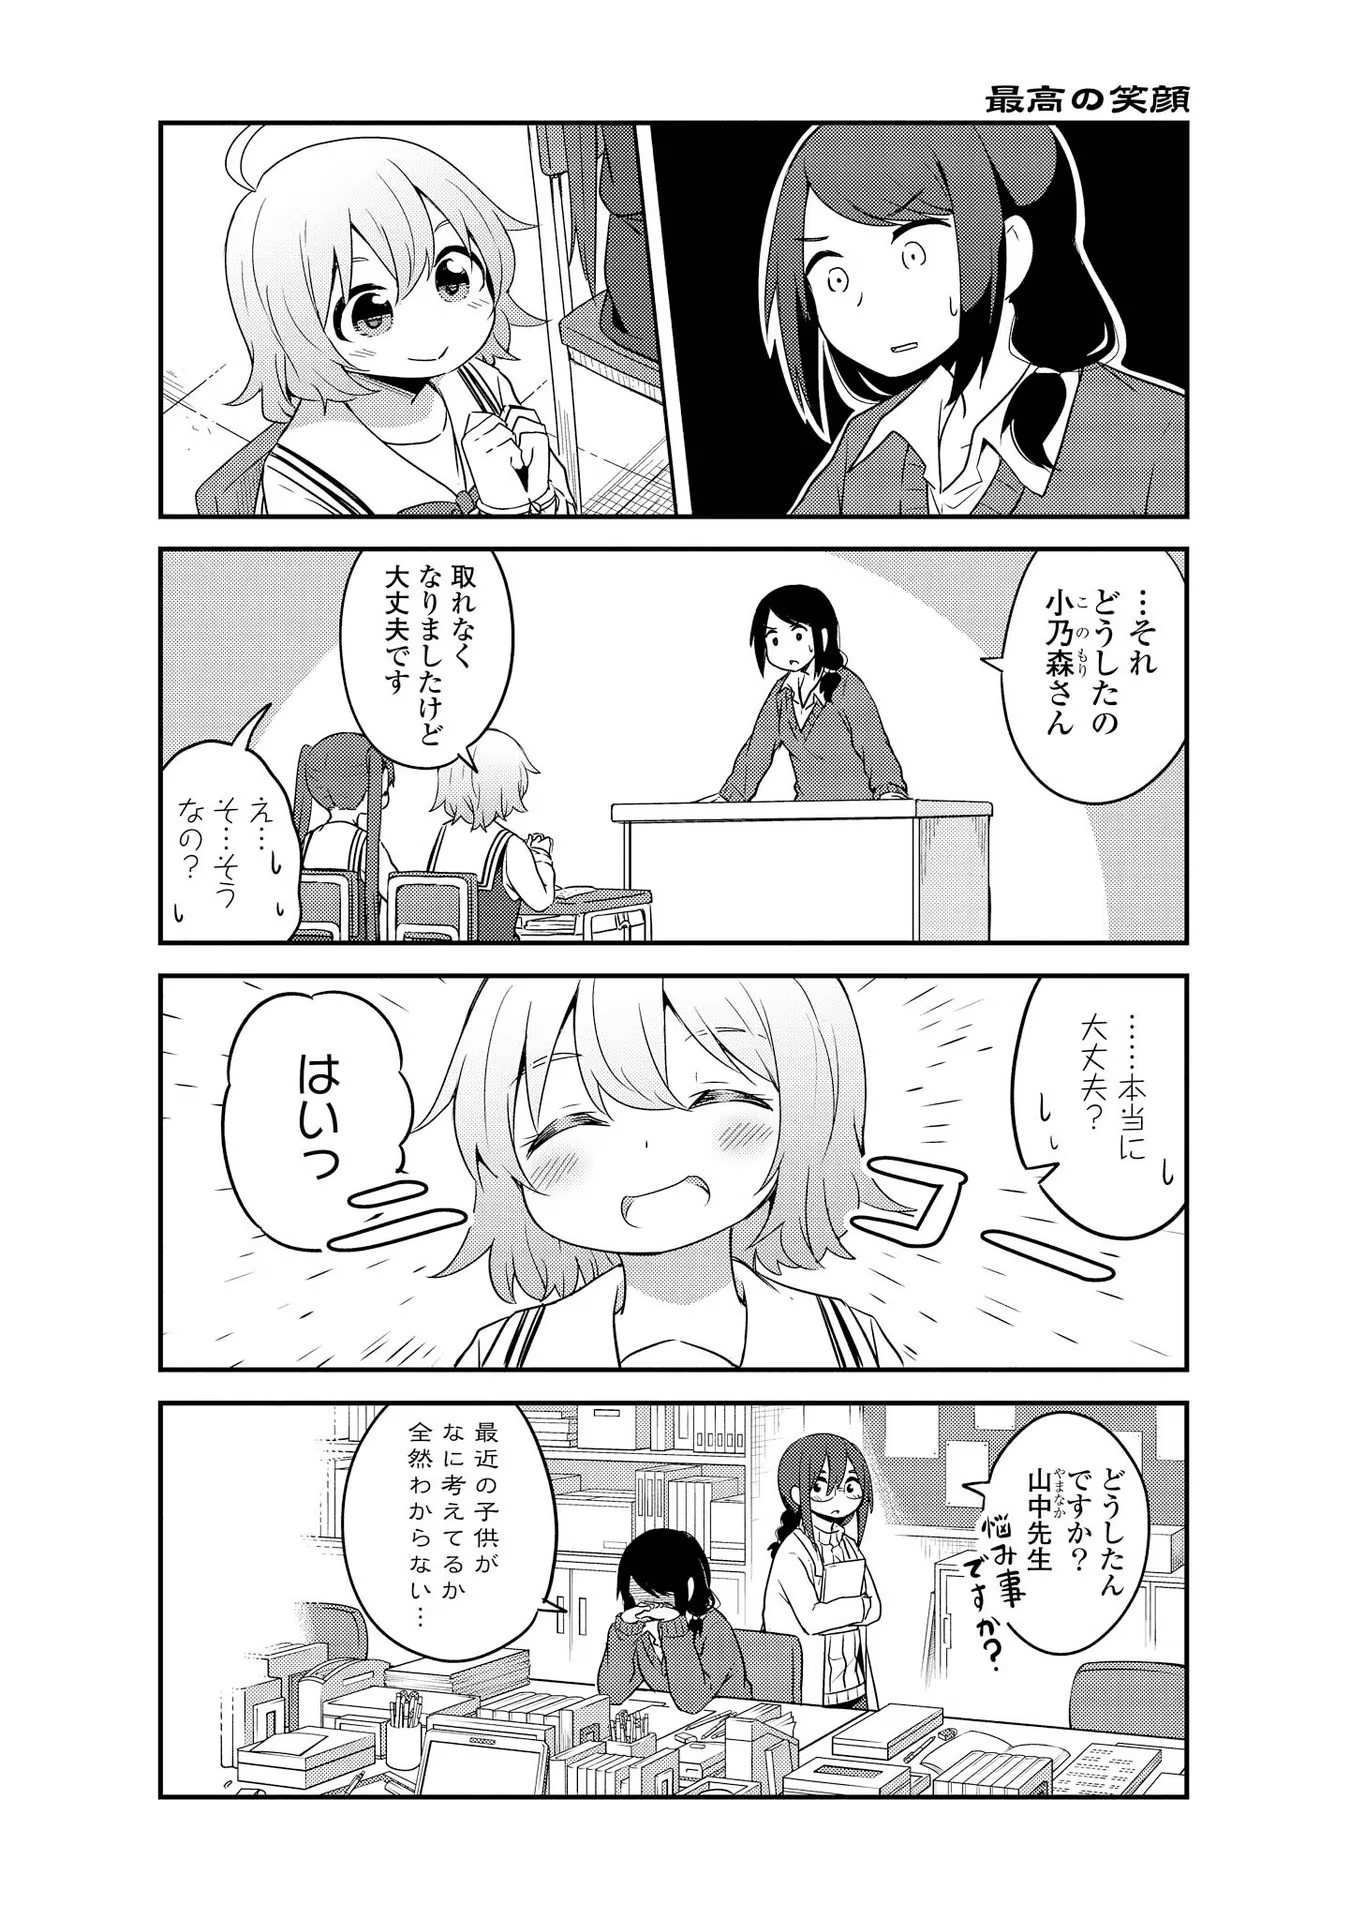 Watashi ni Tenshi ga Maiorita! - Chapter 28 - Page 16